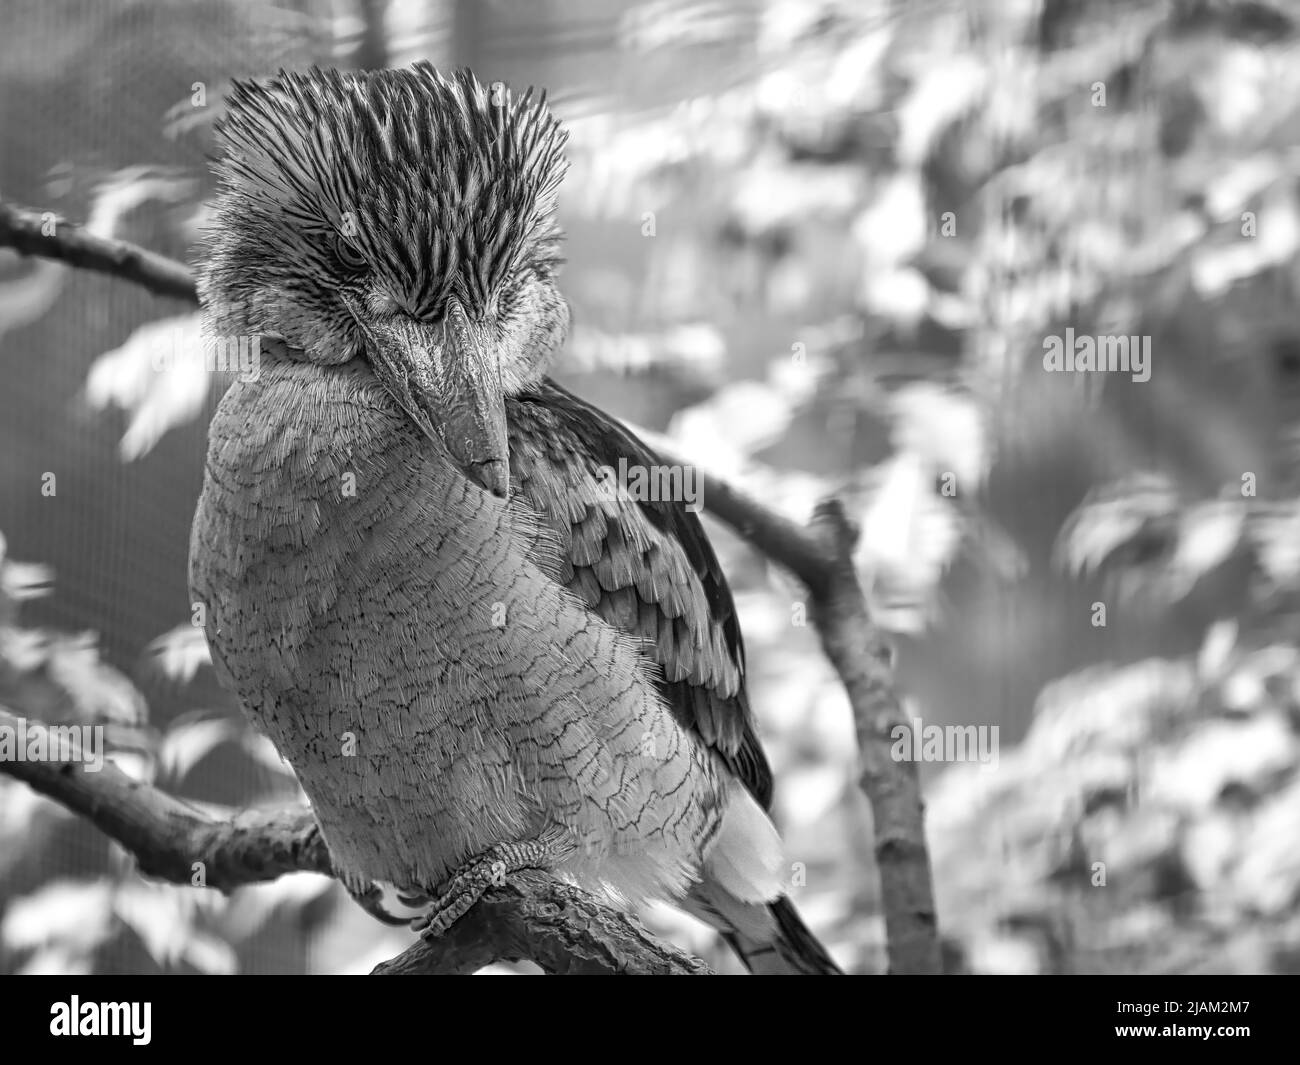 Ride Hans in bianco e nero. Su un ramo. Bellissimo piumaggio colorato dell'uccello australiano. Interessante osservazione dell'animale. Foto animali Foto Stock